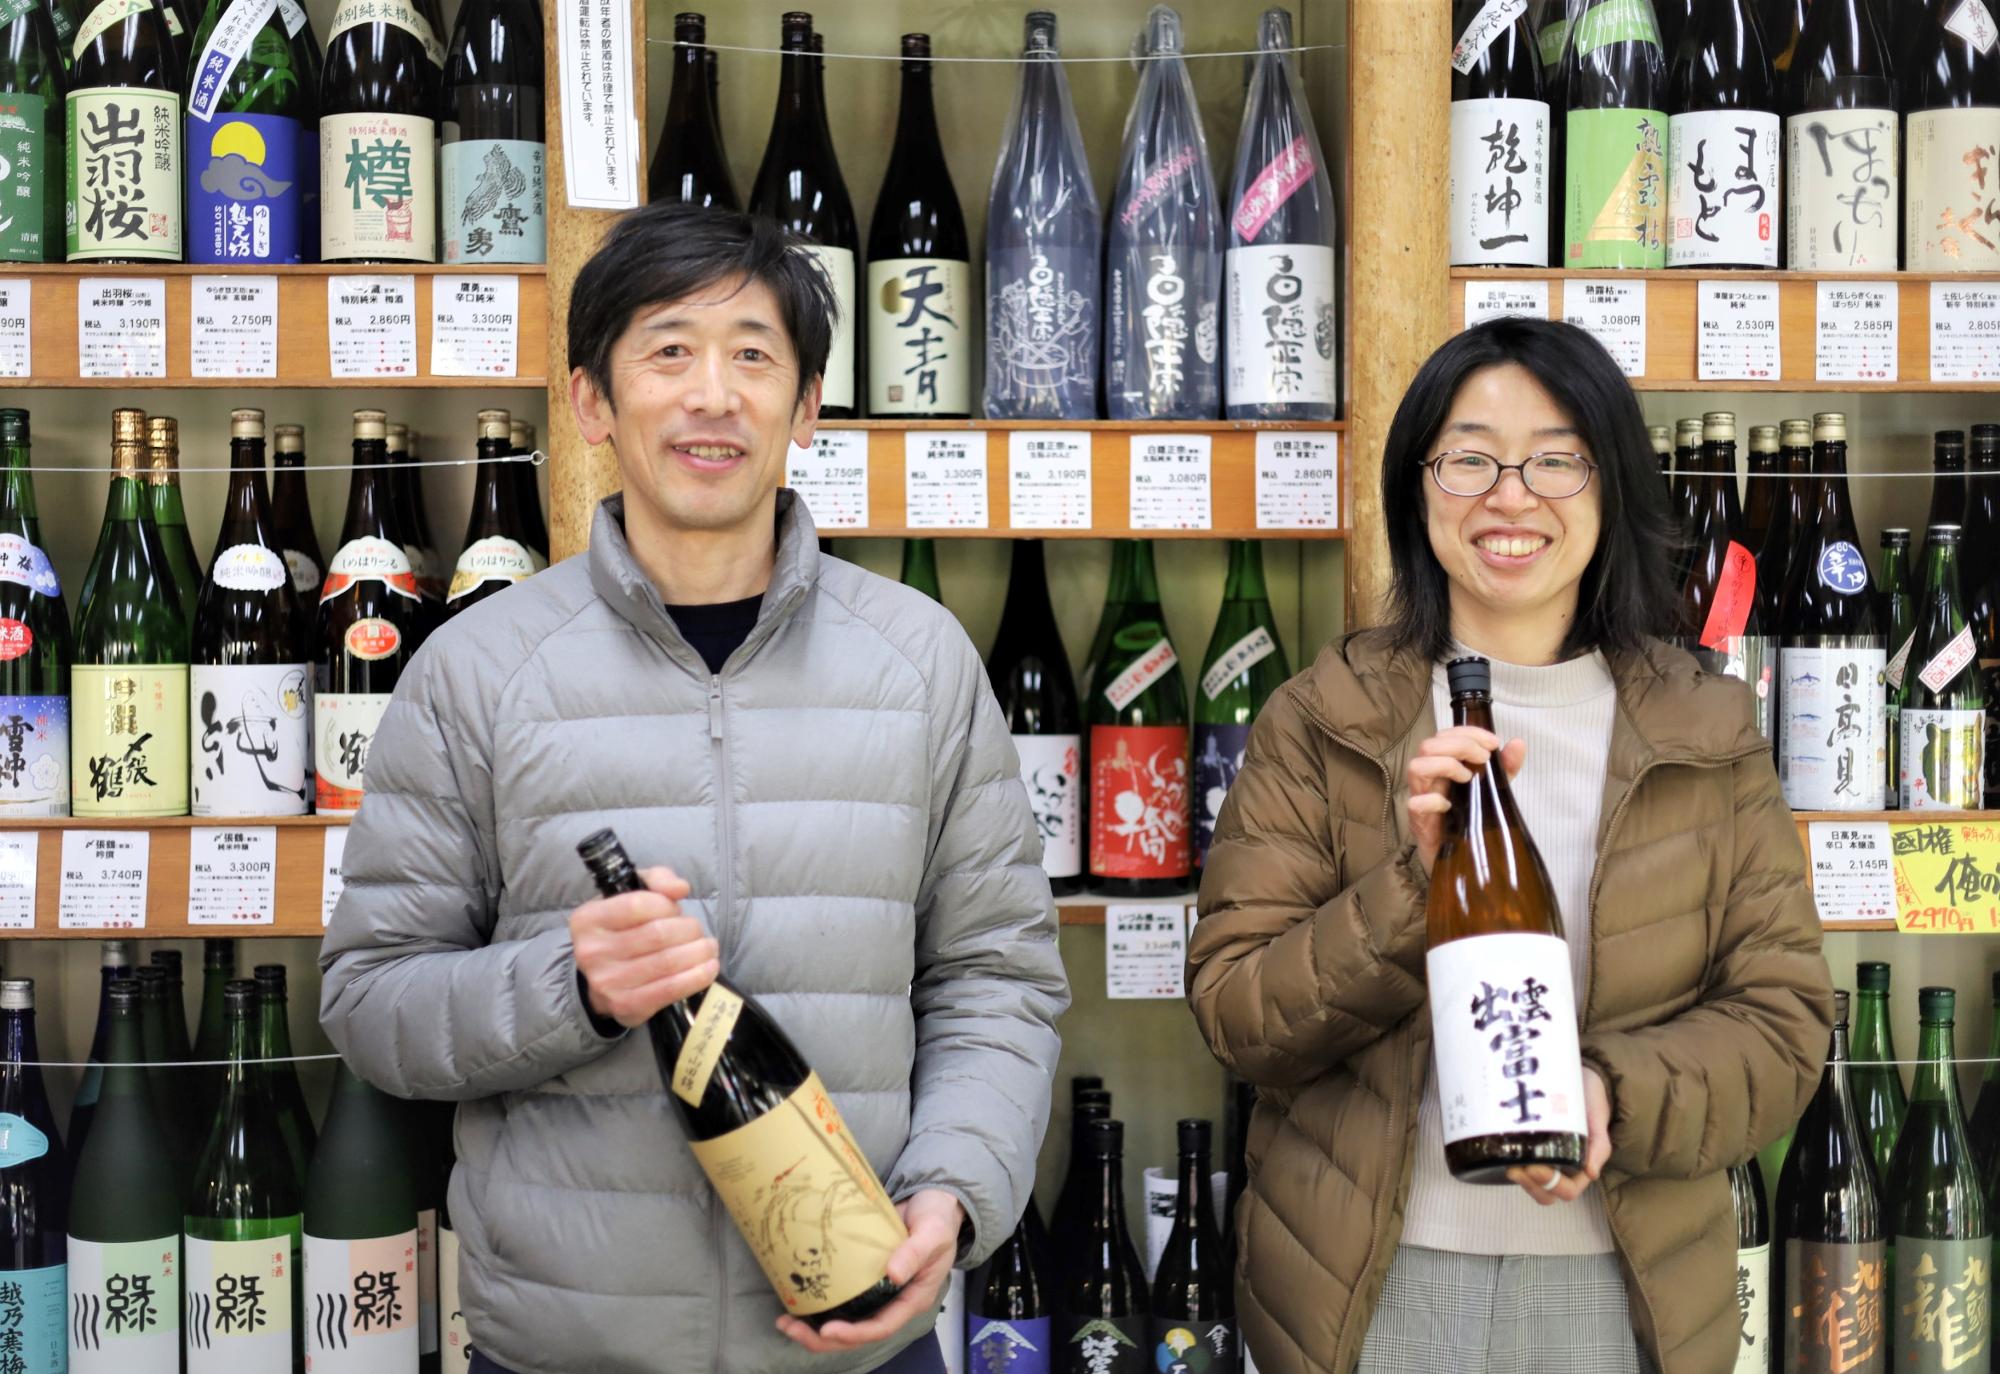 「従業員みなで日本酒の魅力や酒蔵さんの想いを伝えていきたい」と宮川さんご夫婦は笑顔で語る。